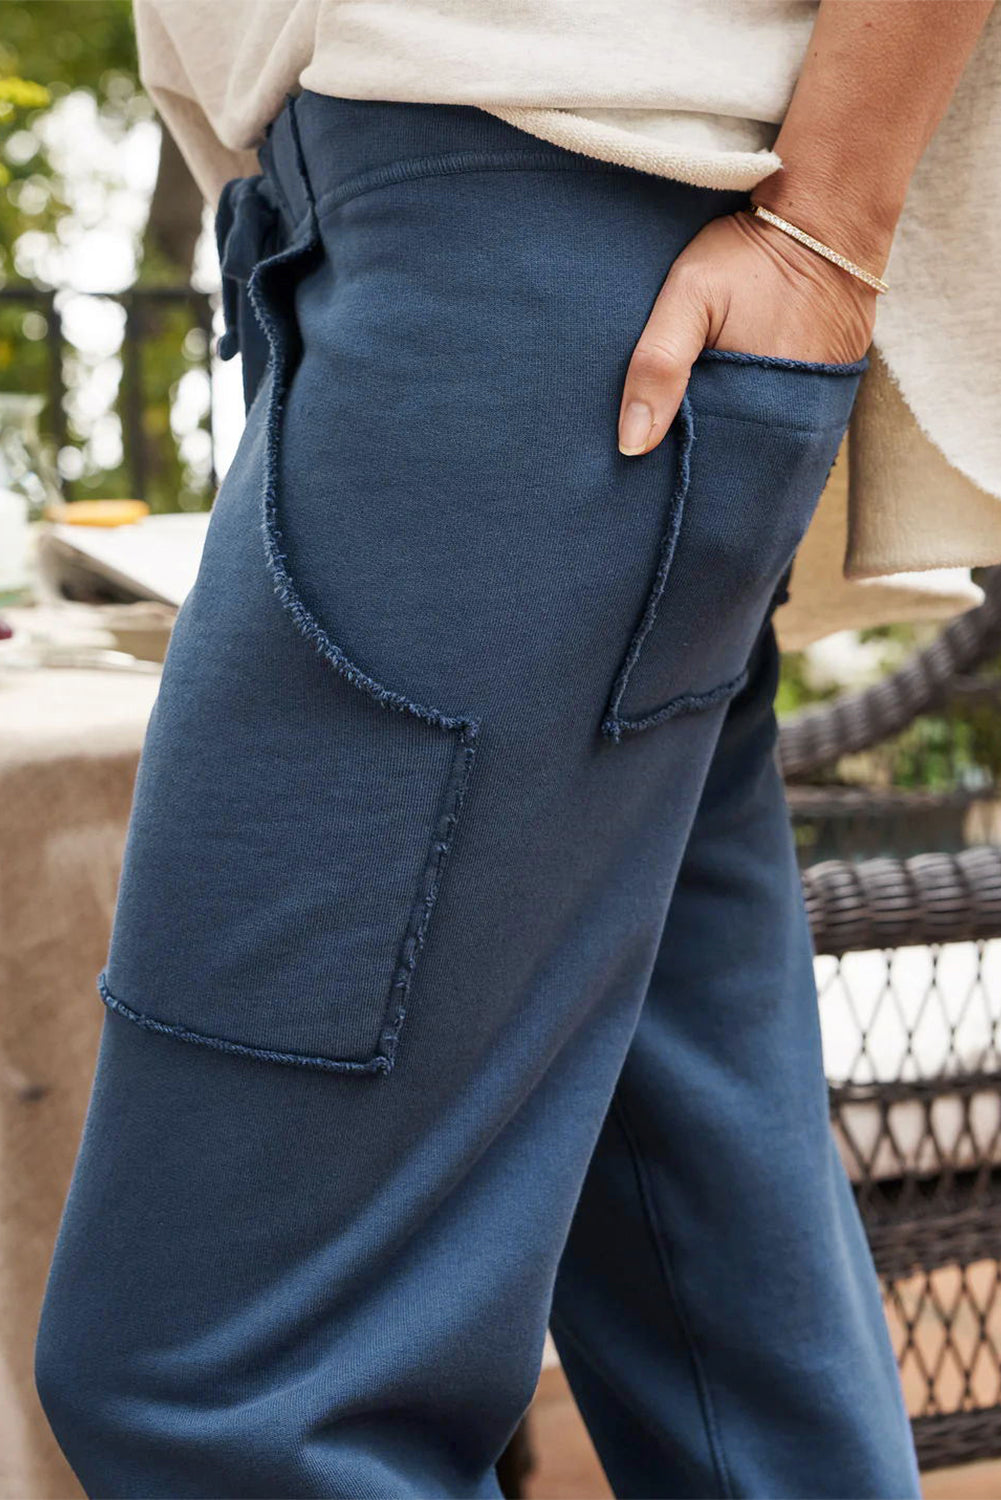 Pantalon de jogging bleu marine avec poches effilochées et cordon de serrage